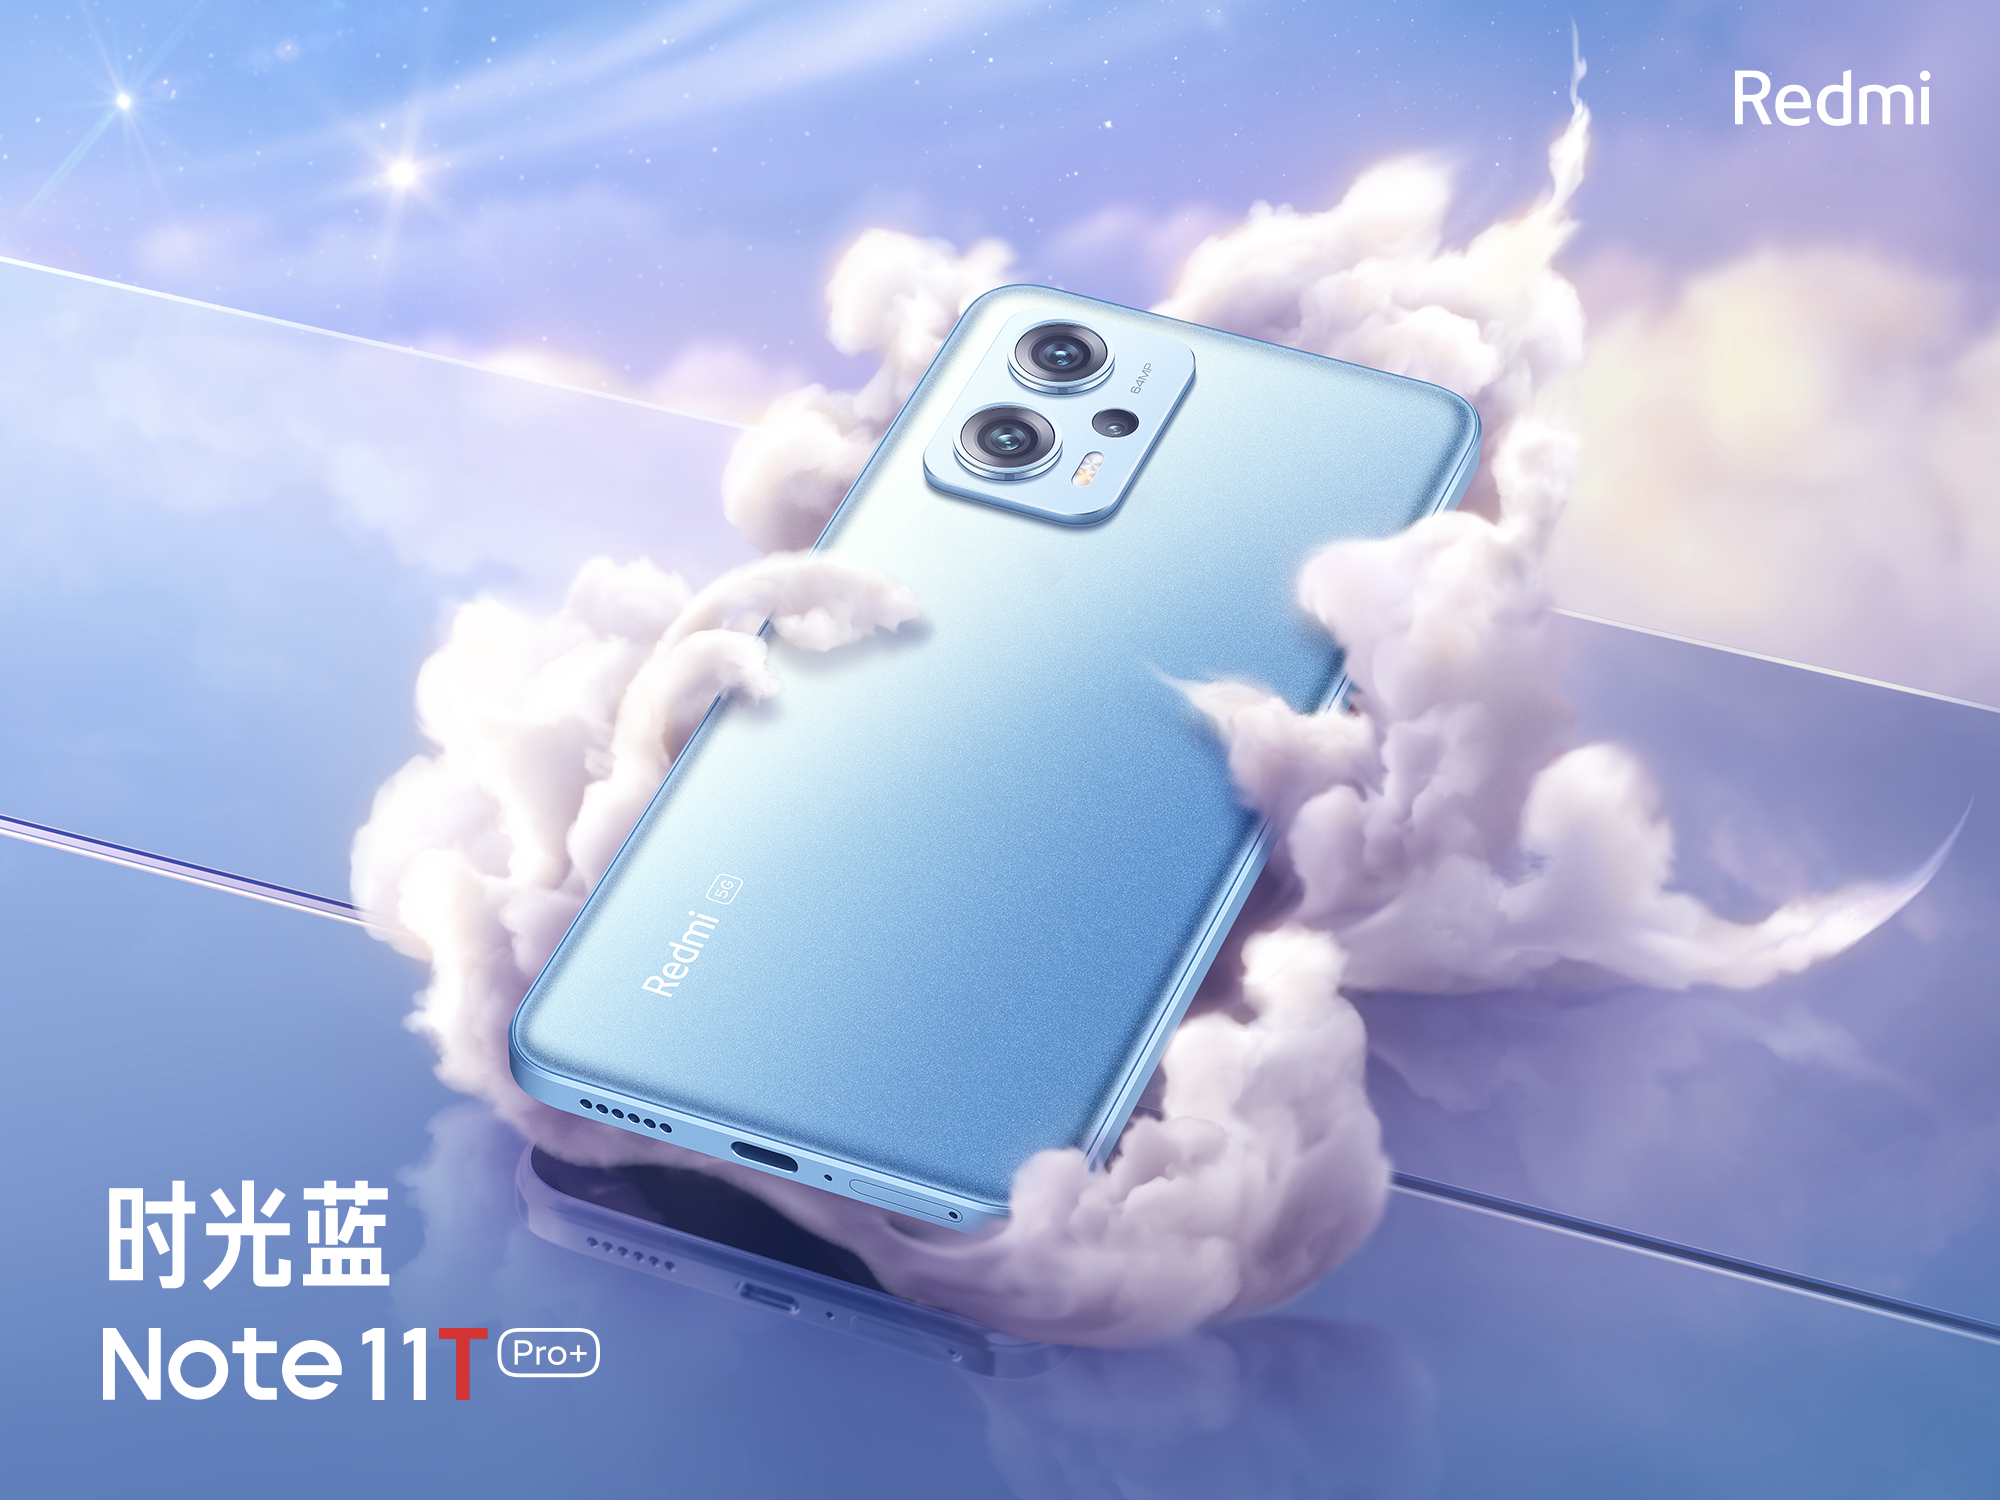 Redmi Note 11T Pro+ è il primo smartphone nella storia della serie con 512 GB di memoria